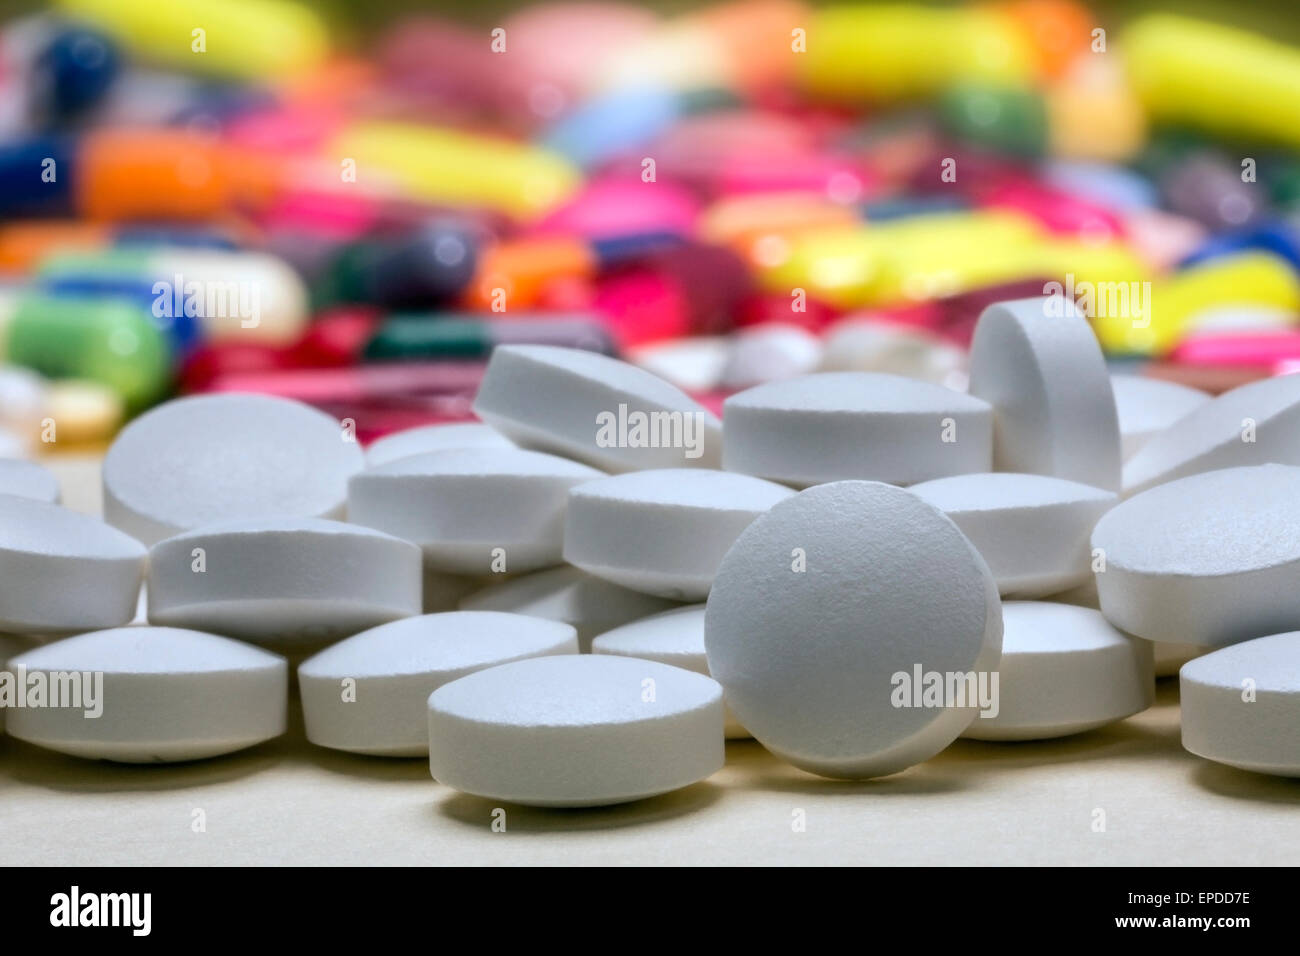 Medicina - píldoras y tabletas utilizadas en el tratamiento de las enfermedades. Foto de stock